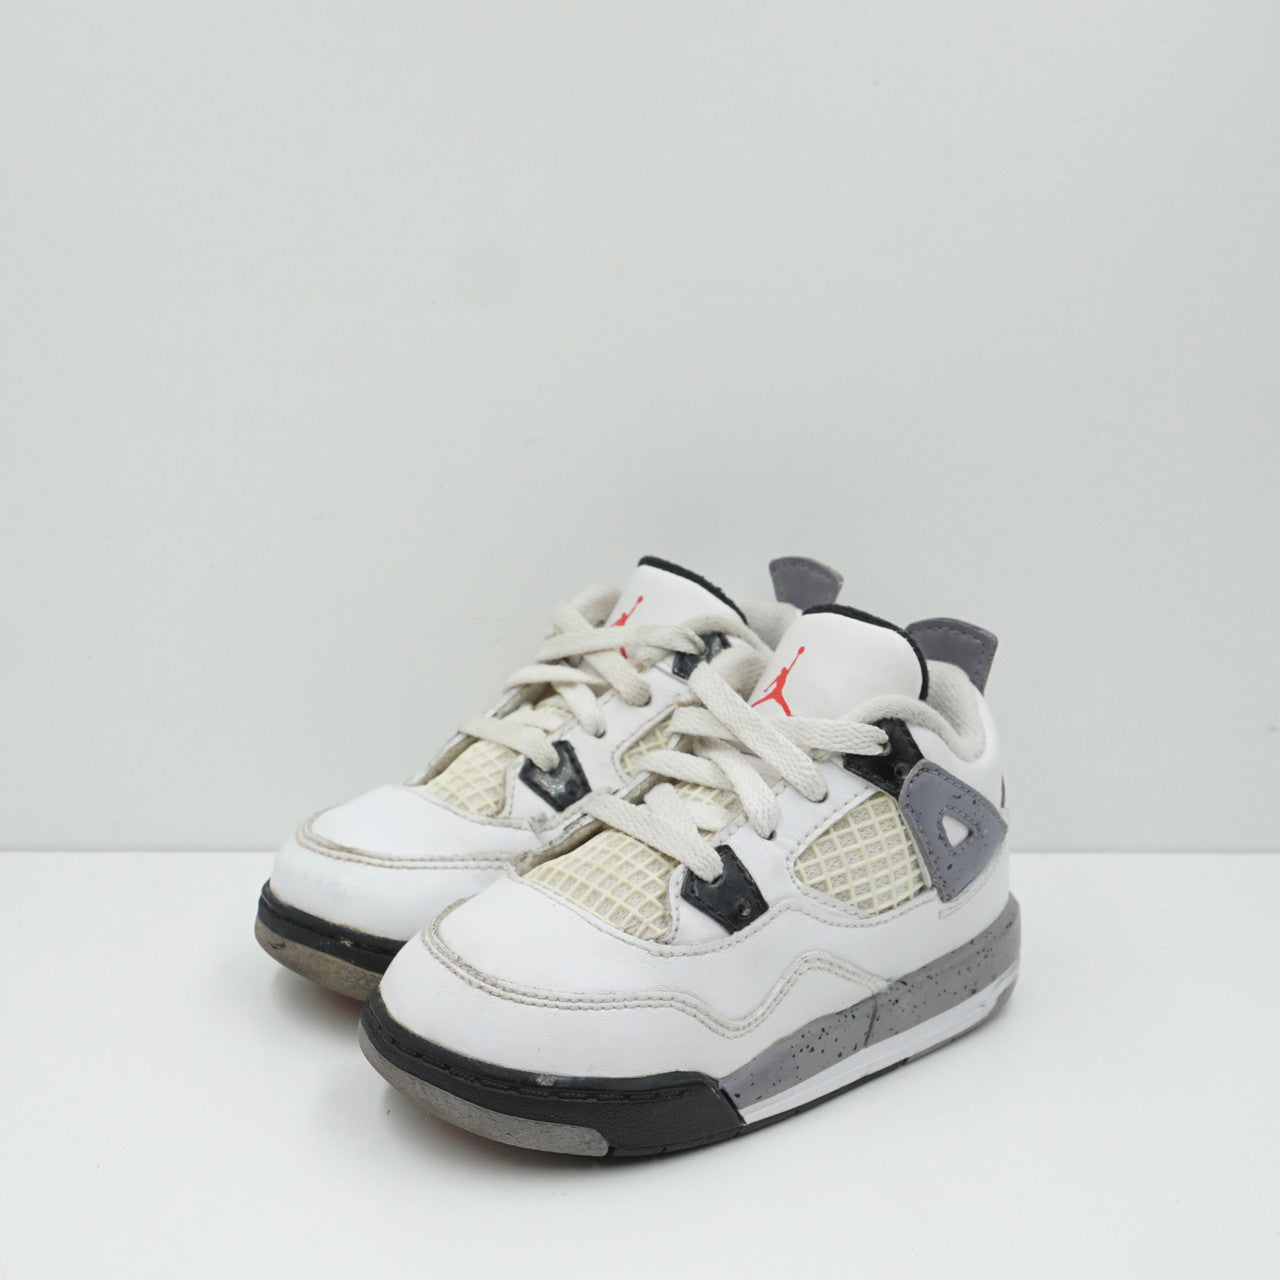 Jordan 4 Retro White Cement (2012) Toddler